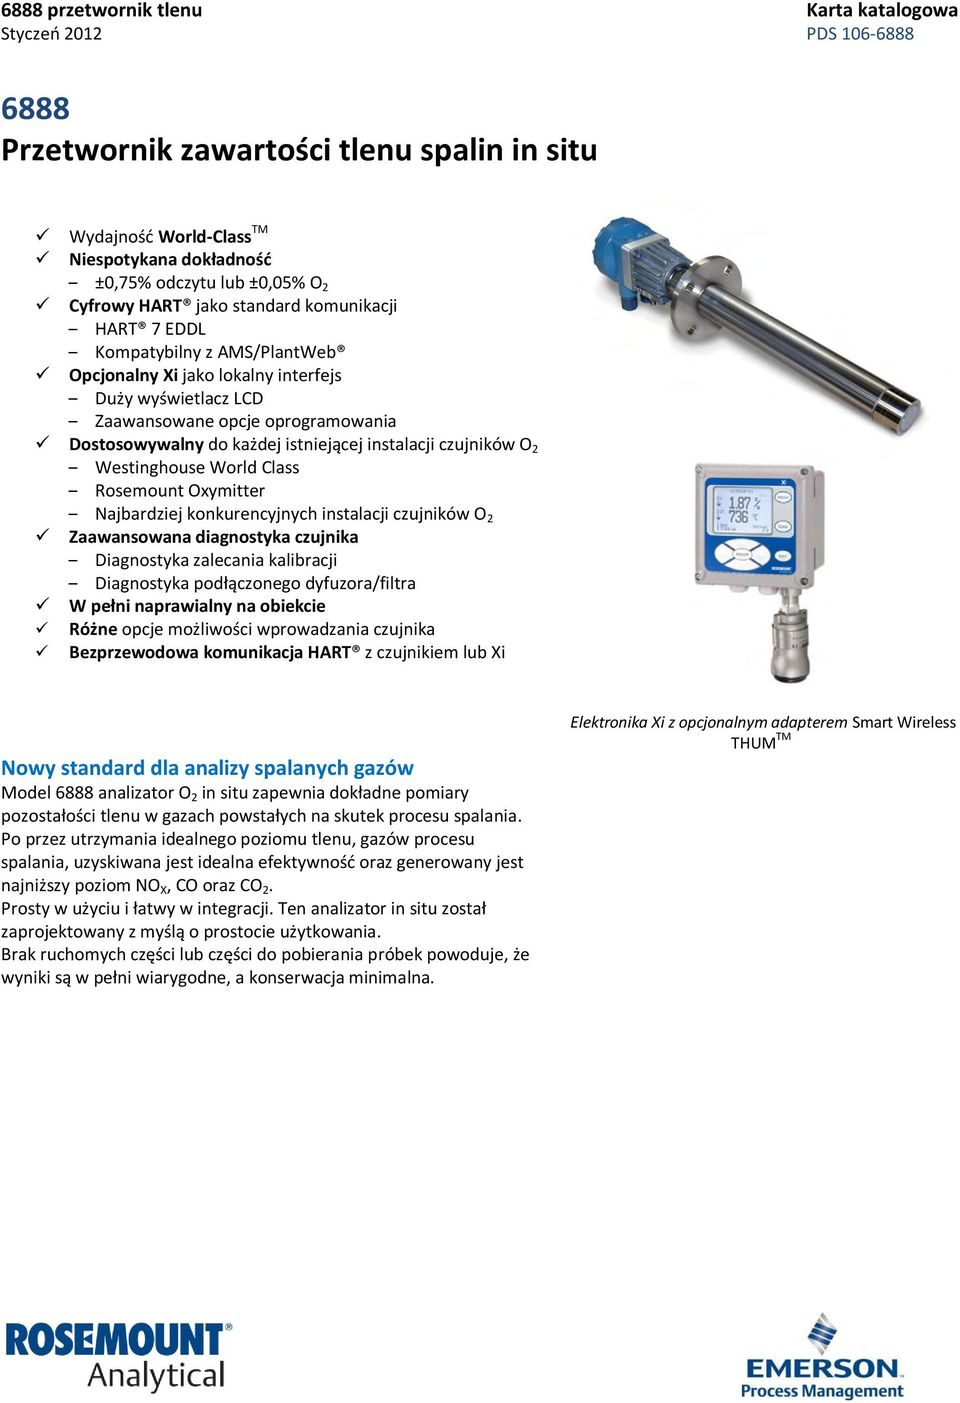 Rosemount Oxymitter Najbardziej konkurencyjnych instalacji czujników O 2 Zaawansowana diagnostyka czujnika Diagnostyka zalecania kalibracji Diagnostyka podłączonego dyfuzora/filtra W pełni